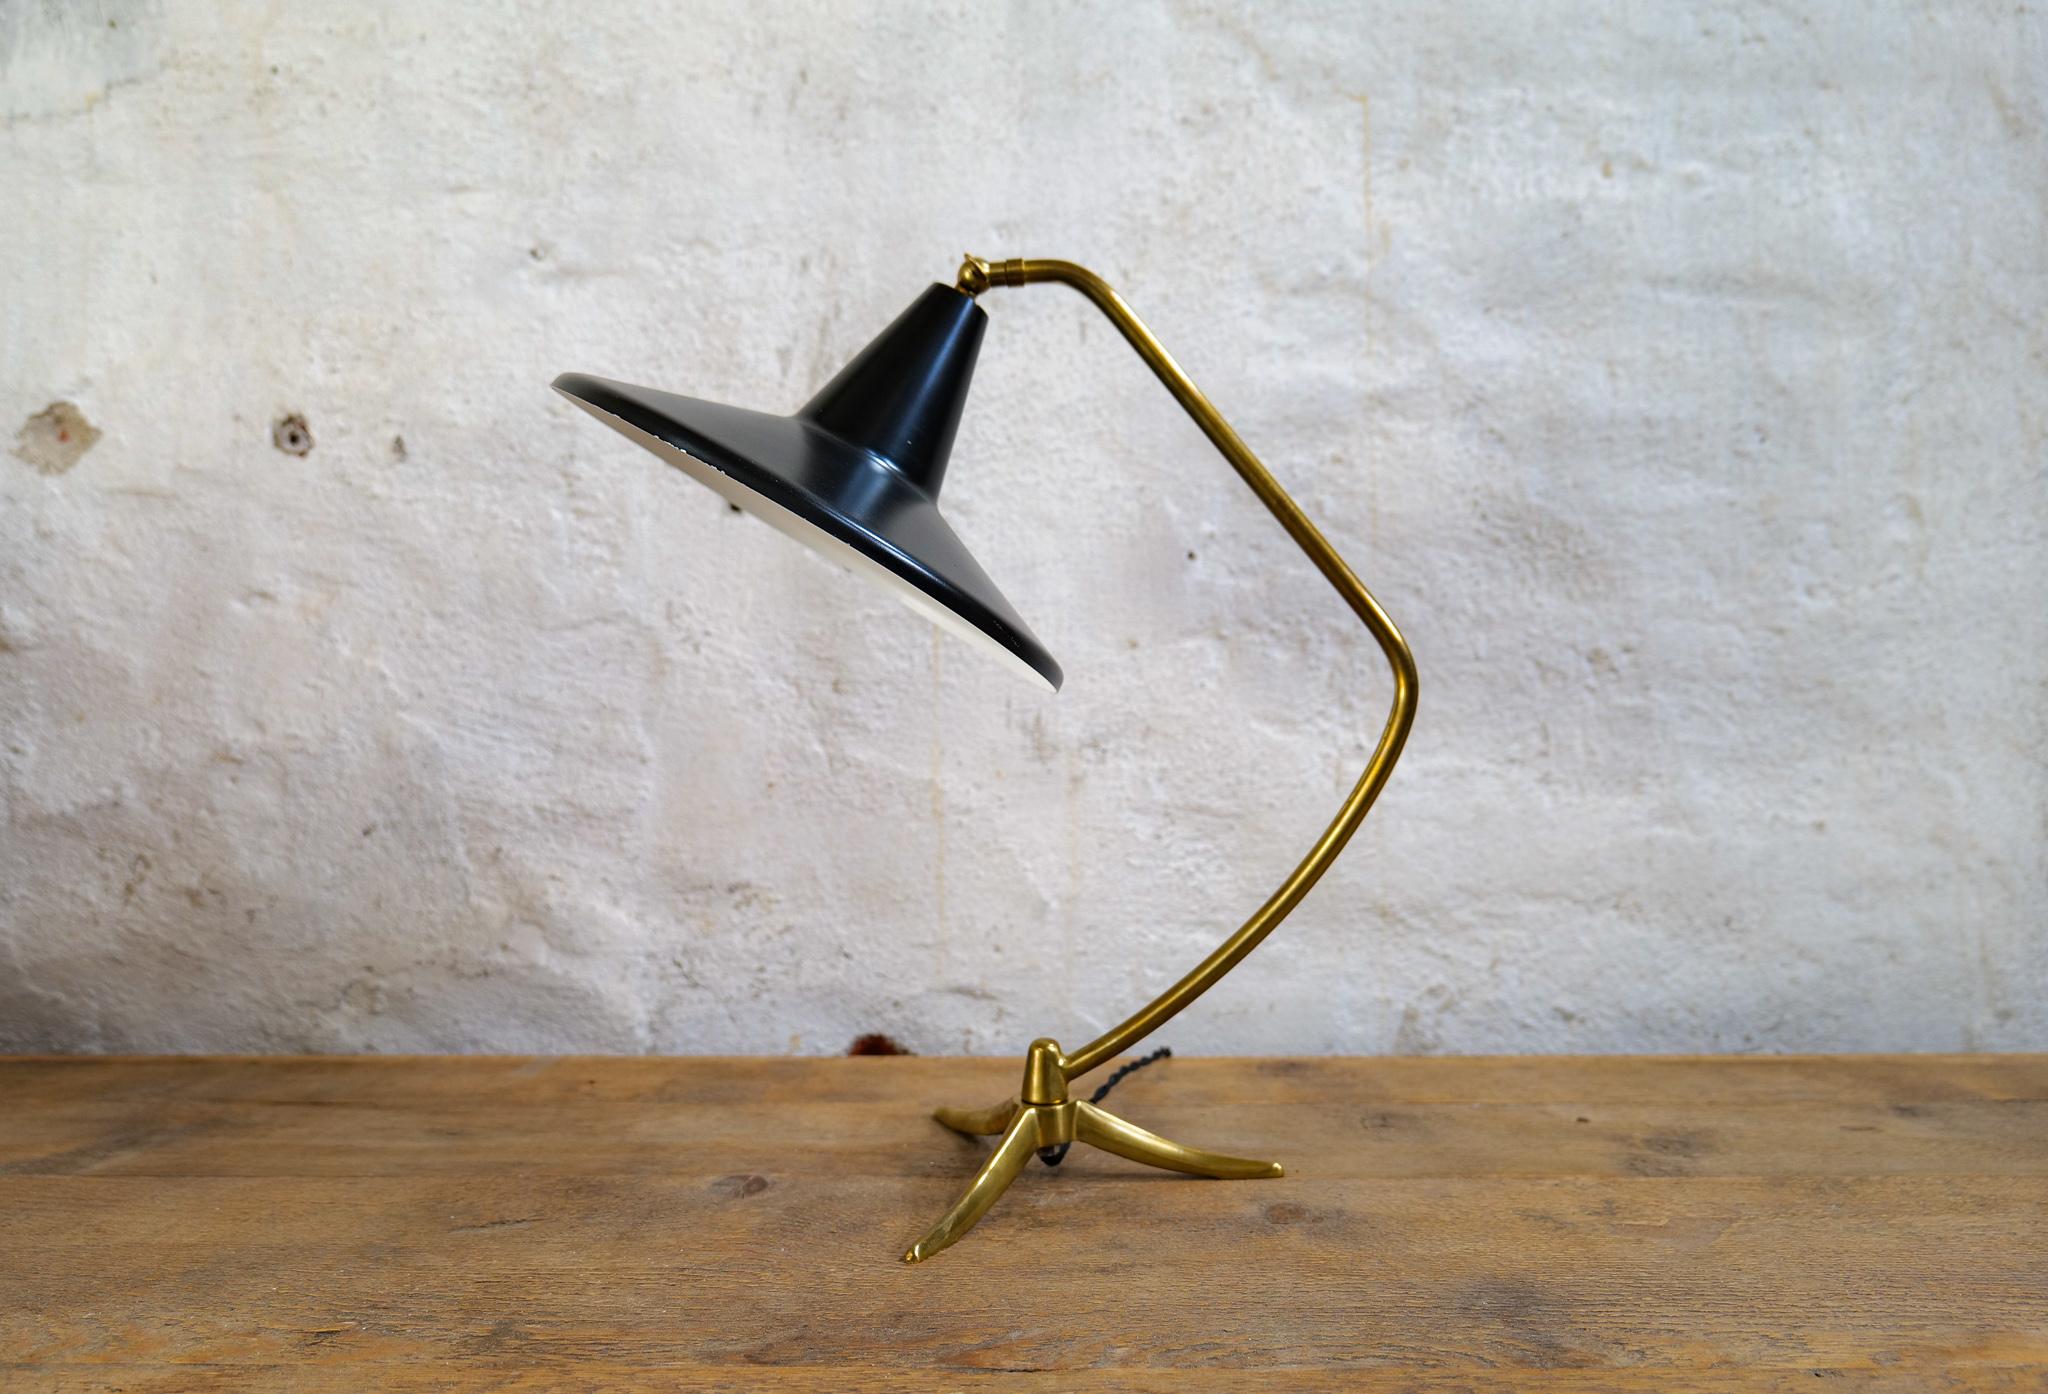 Elegante schwedische Tischlampe aus dem Jahr 1950, die ASEA zugeschrieben wird. Ein solider dreibeiniger Messingfuß mit Messingstab, der zu einem schwarz patinierten Schirm führt, ist eine schöne Kombination. Der Schirm und der Stab sind